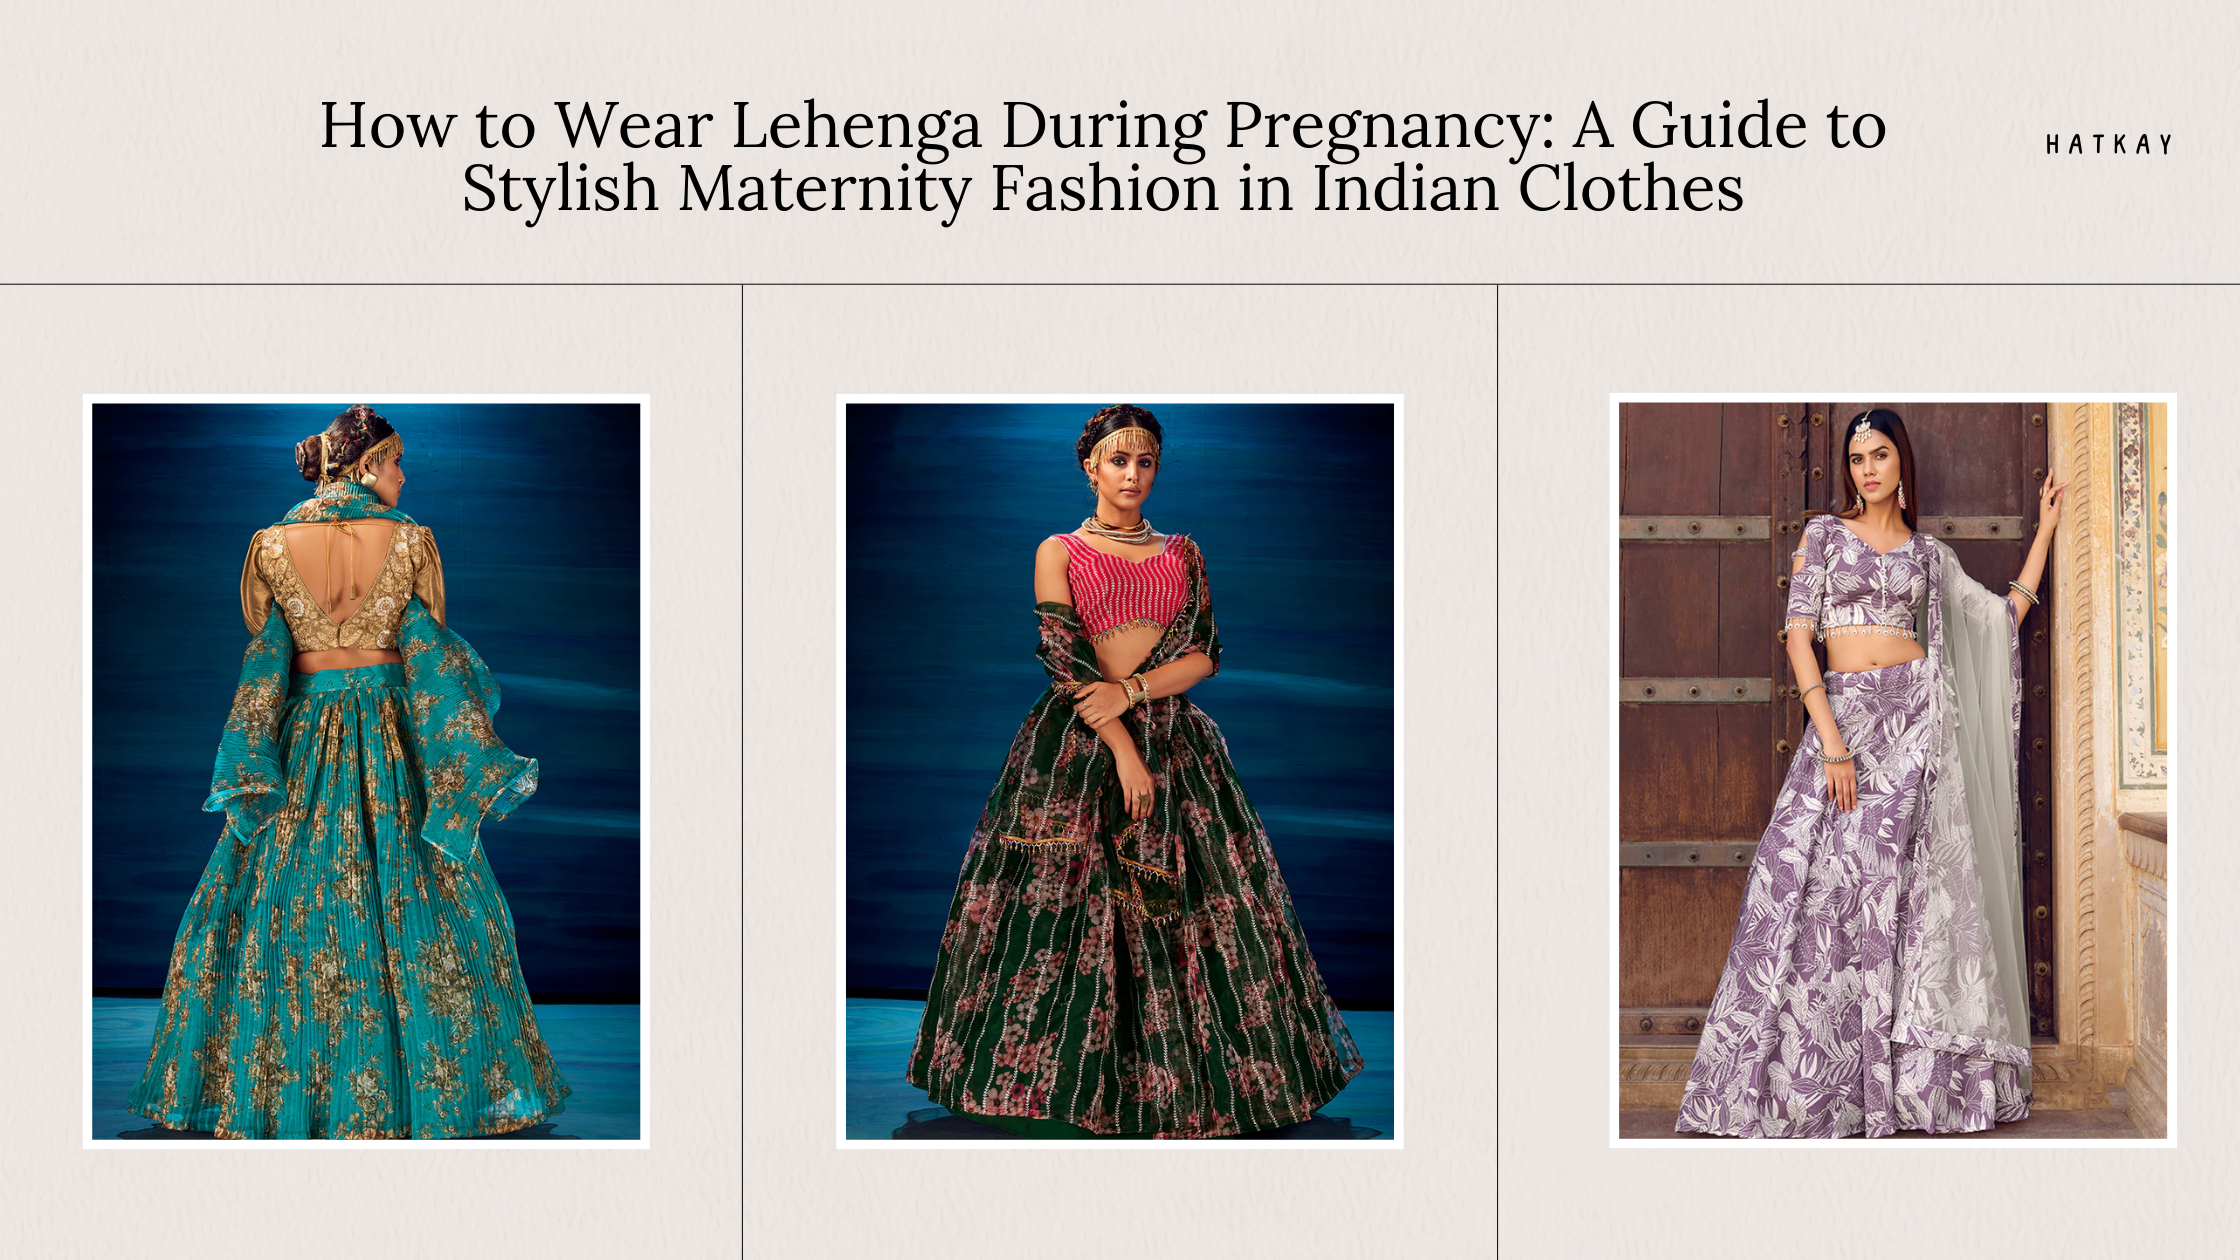 Stylish Maternity: Wearing Lehenga During Pregnancy